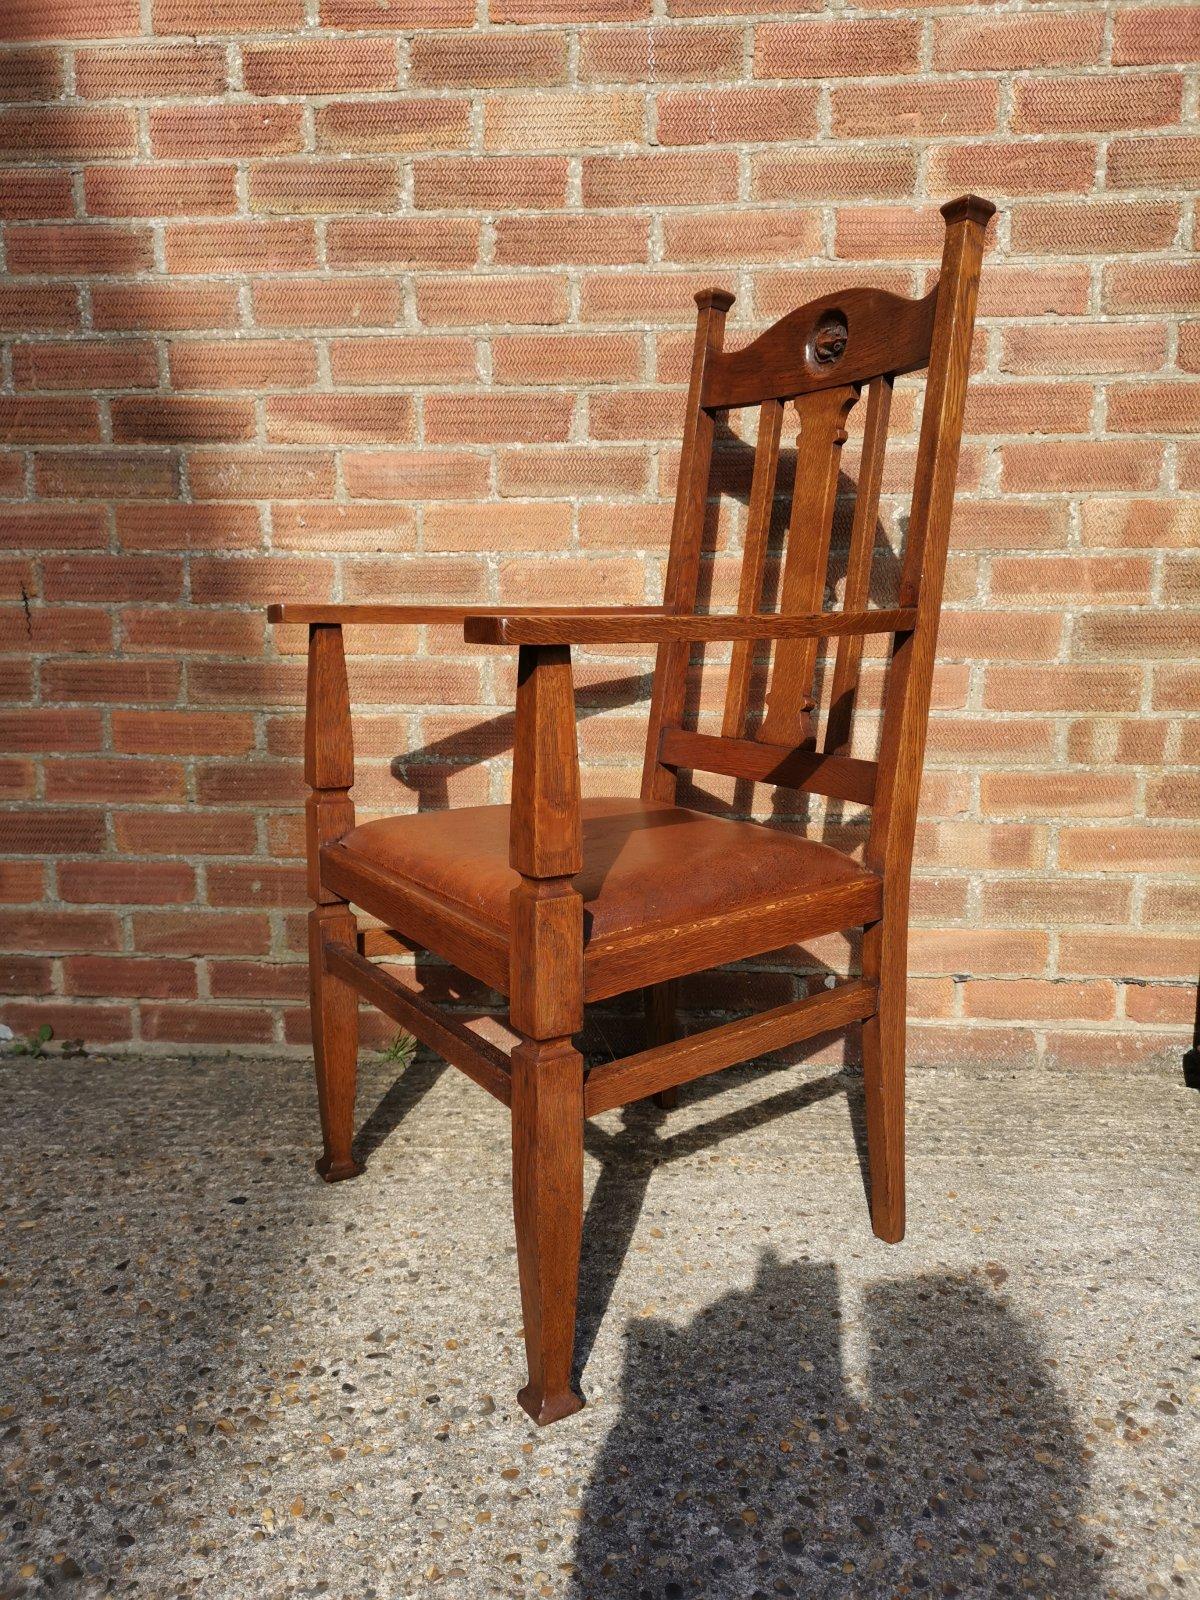 Ein englischer Sessel aus Eichenholz im Arts & Crafts-Stil mit einem geschnitzten Maus-Einsatz an der Kopfstütze, flankiert von verlängerten, gekappten Stützen mit einer geformten zentralen Rückenlehne und einem braunen Ledersitz mit